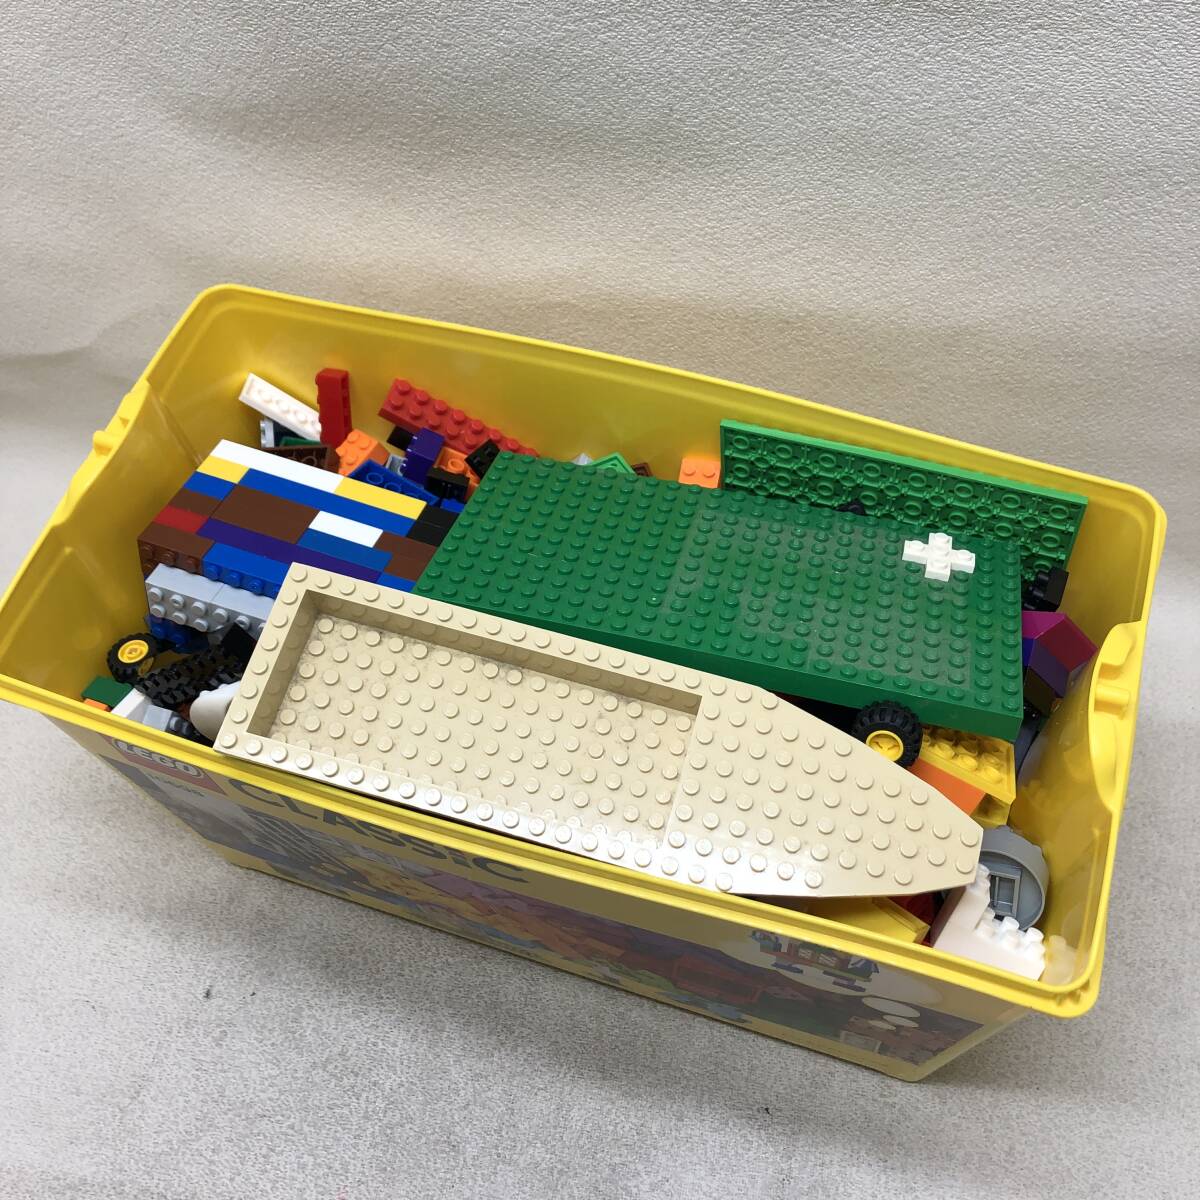 ^LEGO Lego блок детали детали различный судно машина plate много суммировать игрушка развивающая игрушка хобби текущее состояние товар ^C73590